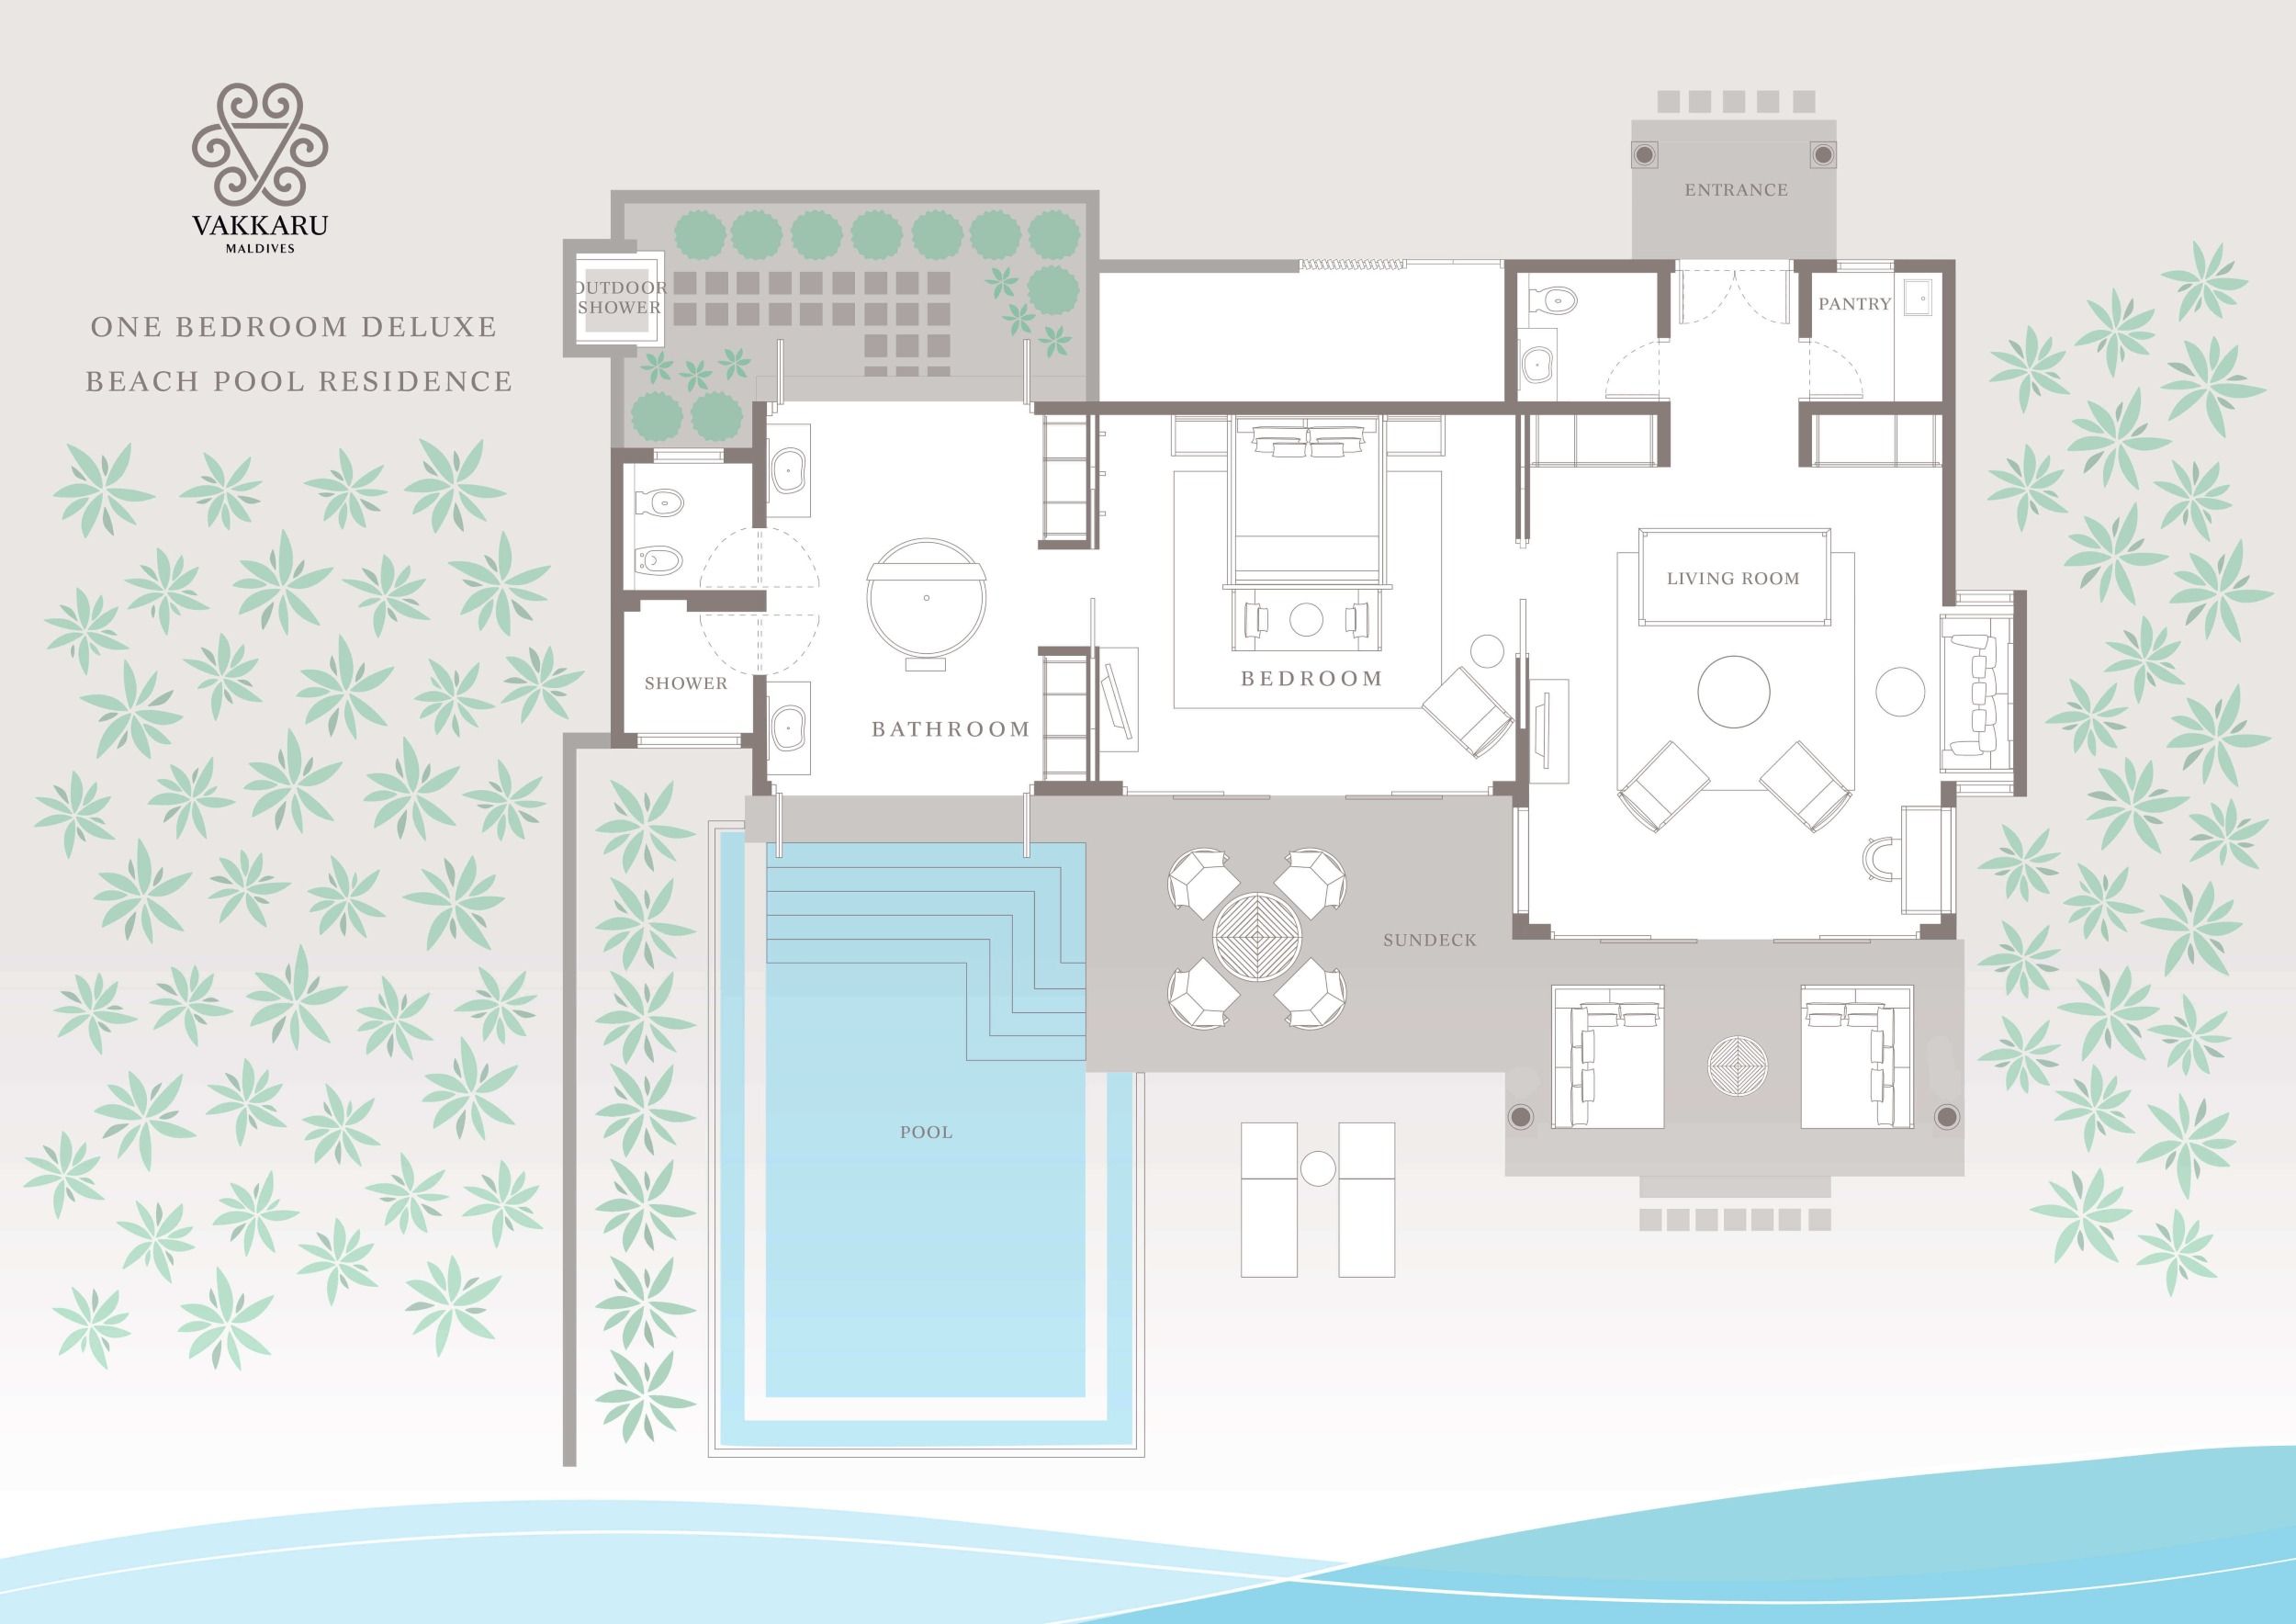 One Bedroom Deluxe Beach Pool Residence Floor Plan Vakkaru Maldives